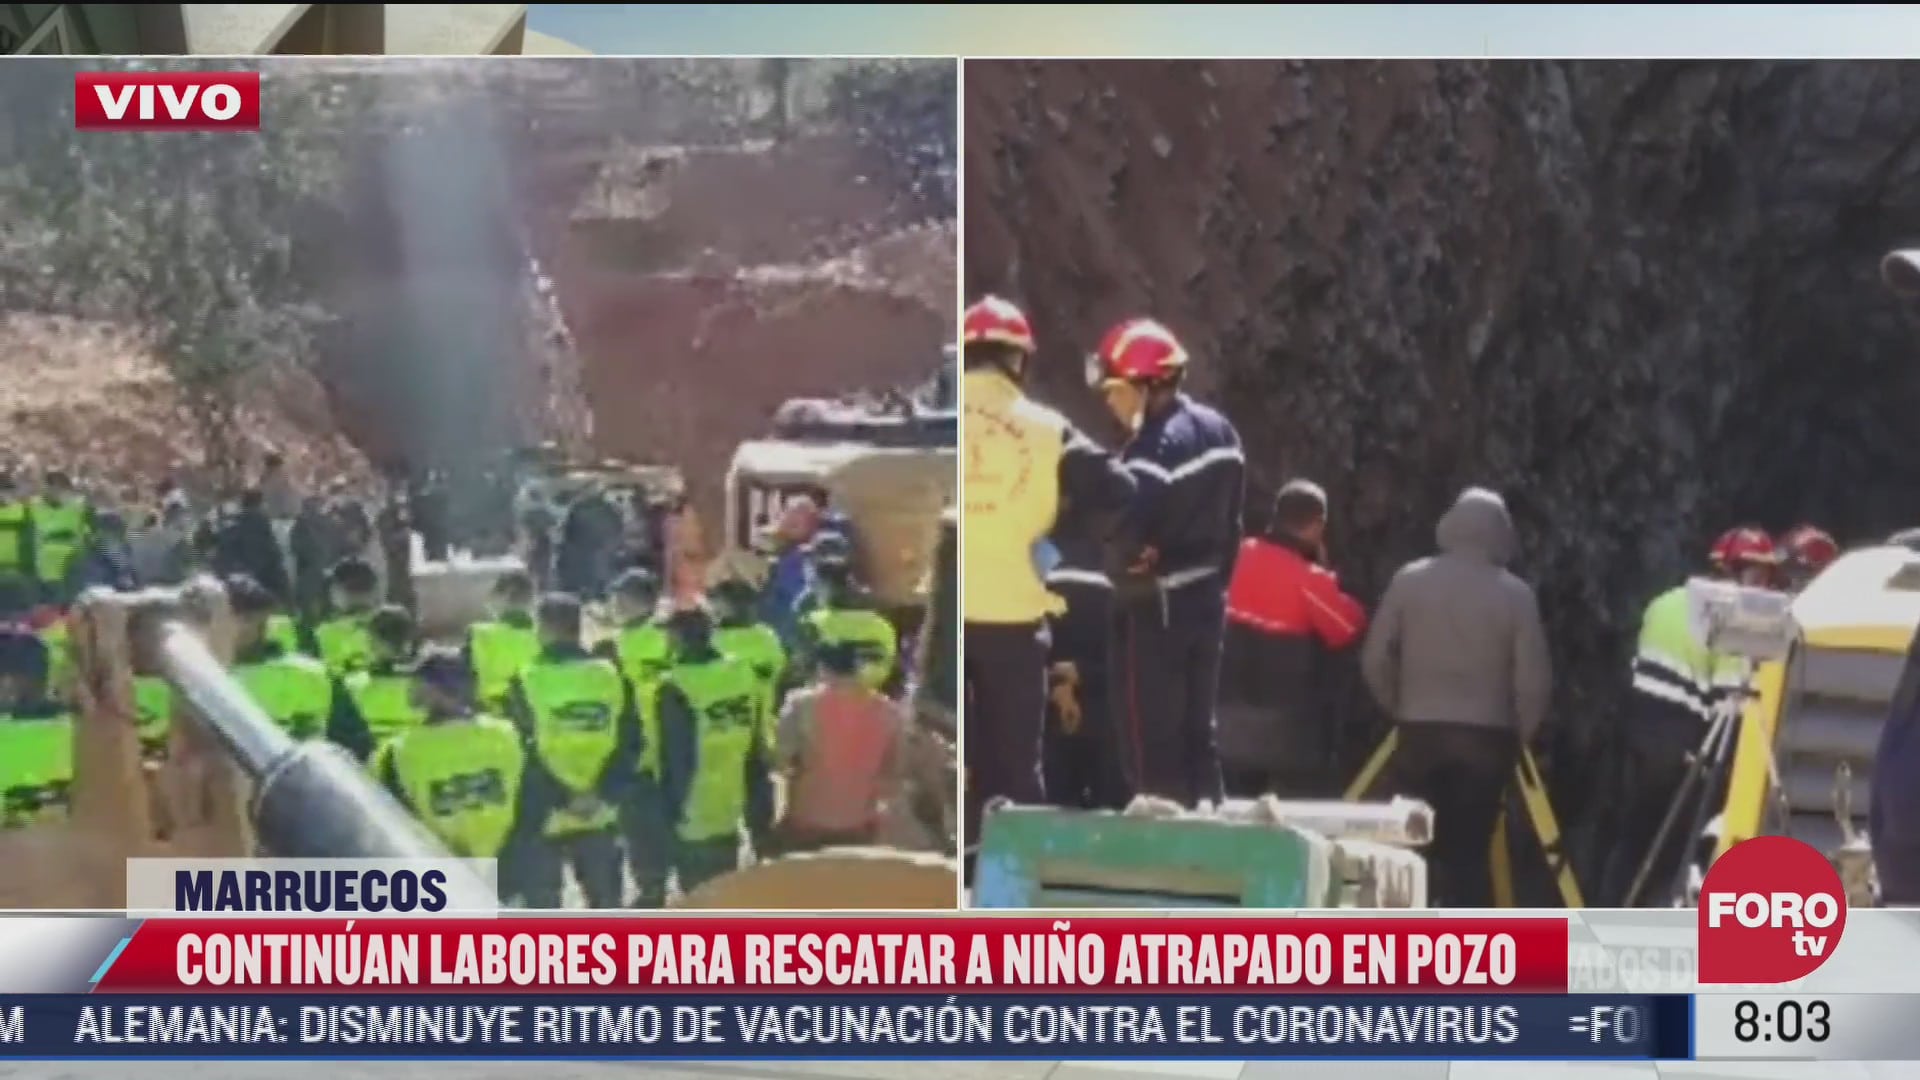 rescatistas continuan trabajando para liberar a nino atrapado en pozo en marruecos